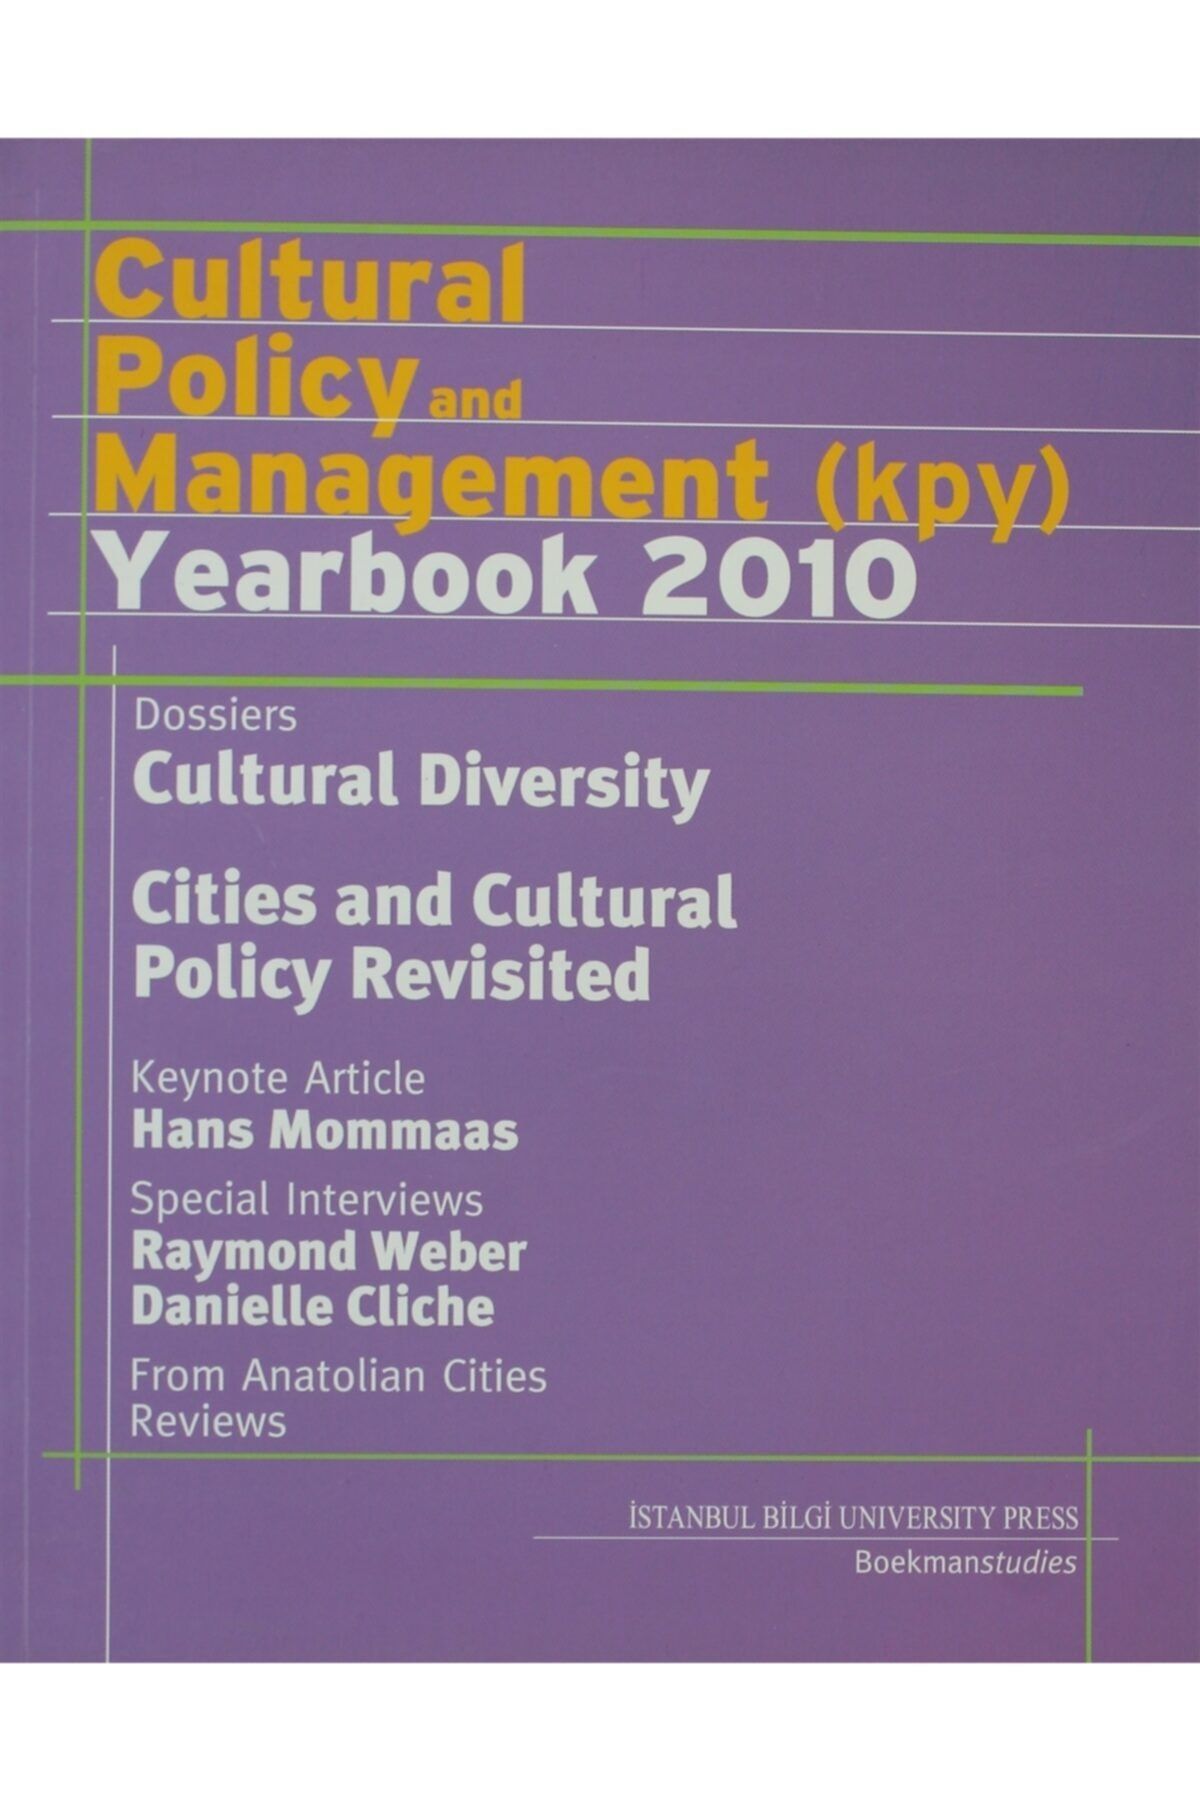 İstanbul Bilgi Üniversitesi Yayınları Cultural Policy and Management (KPY) Yearbook 2010 - Serhan Ada